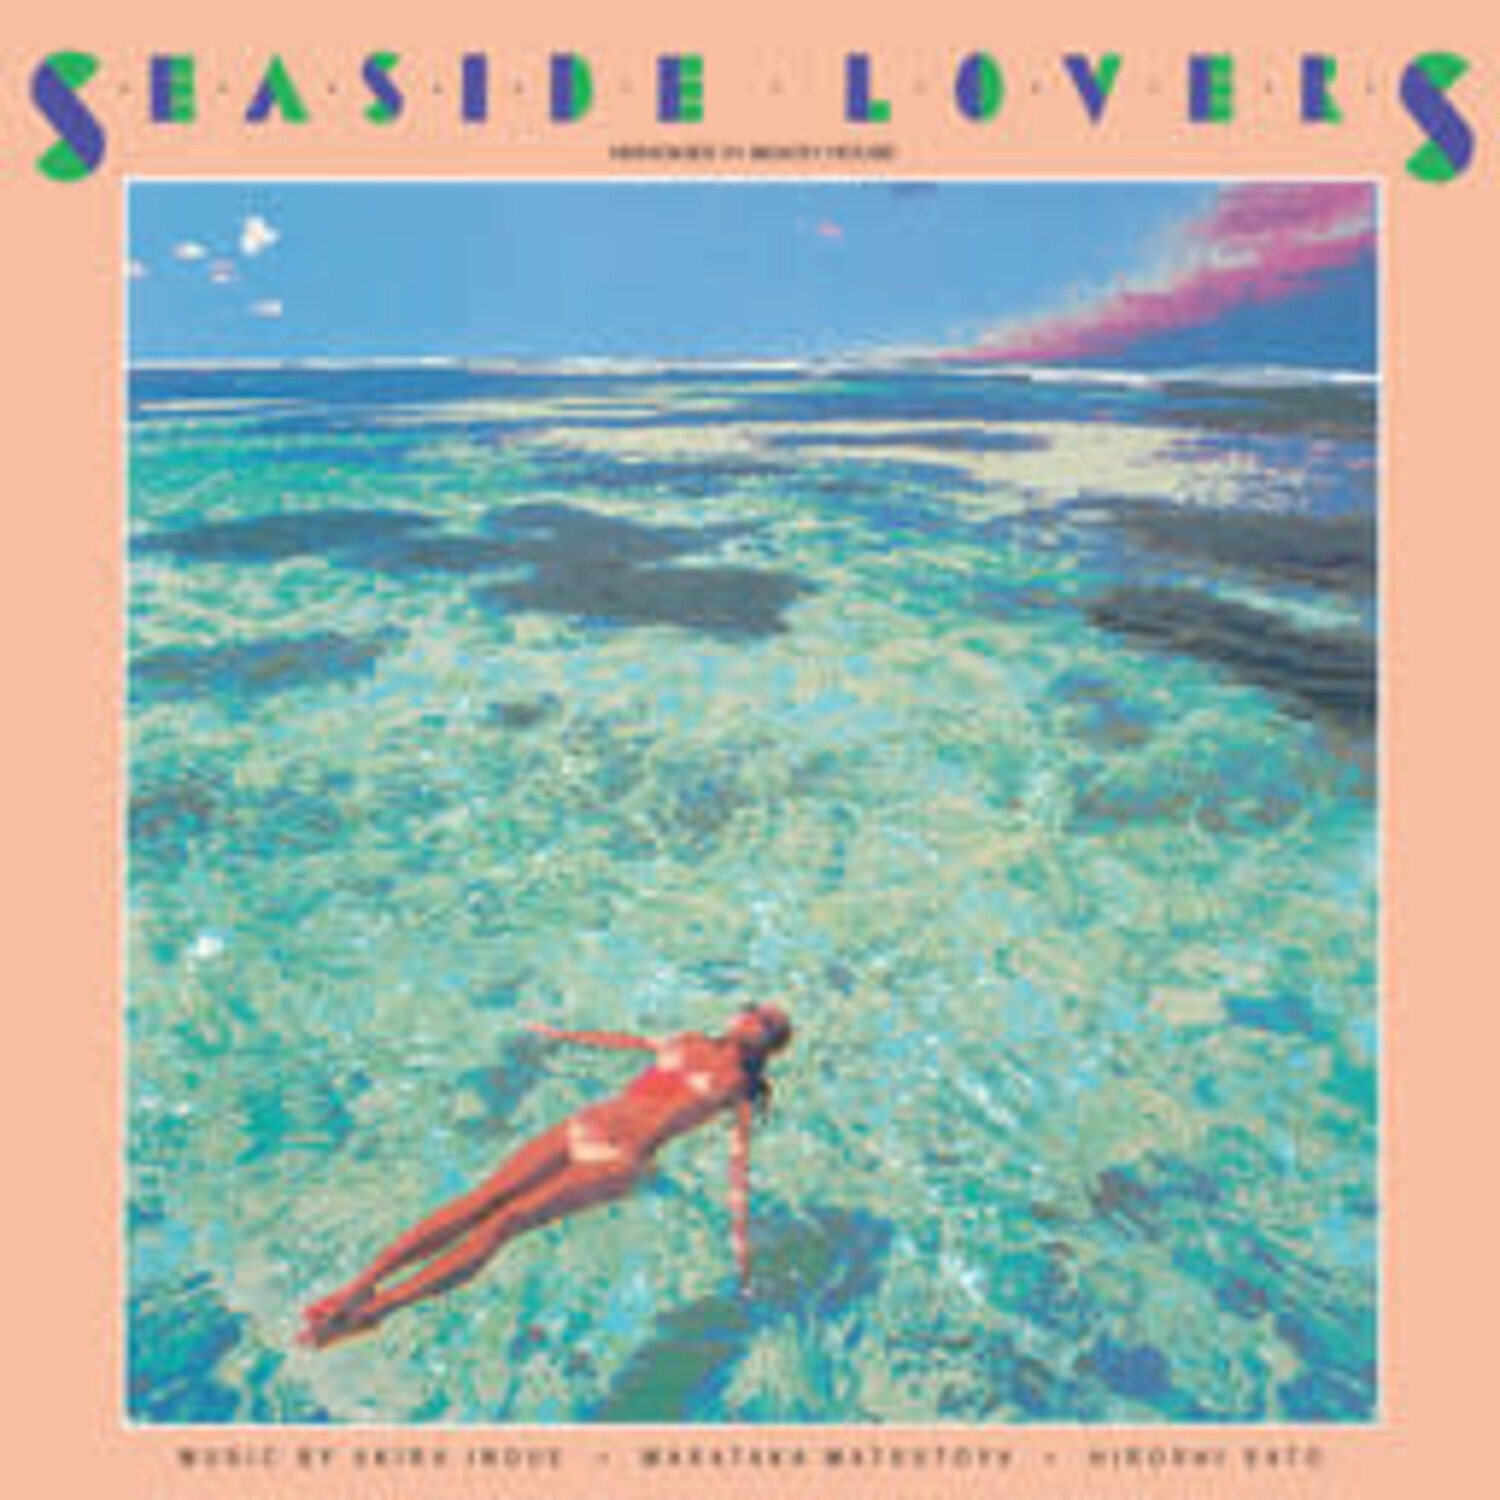 Seaside Lovers - Memories in Beach House LP (color vinyl) - Wax 